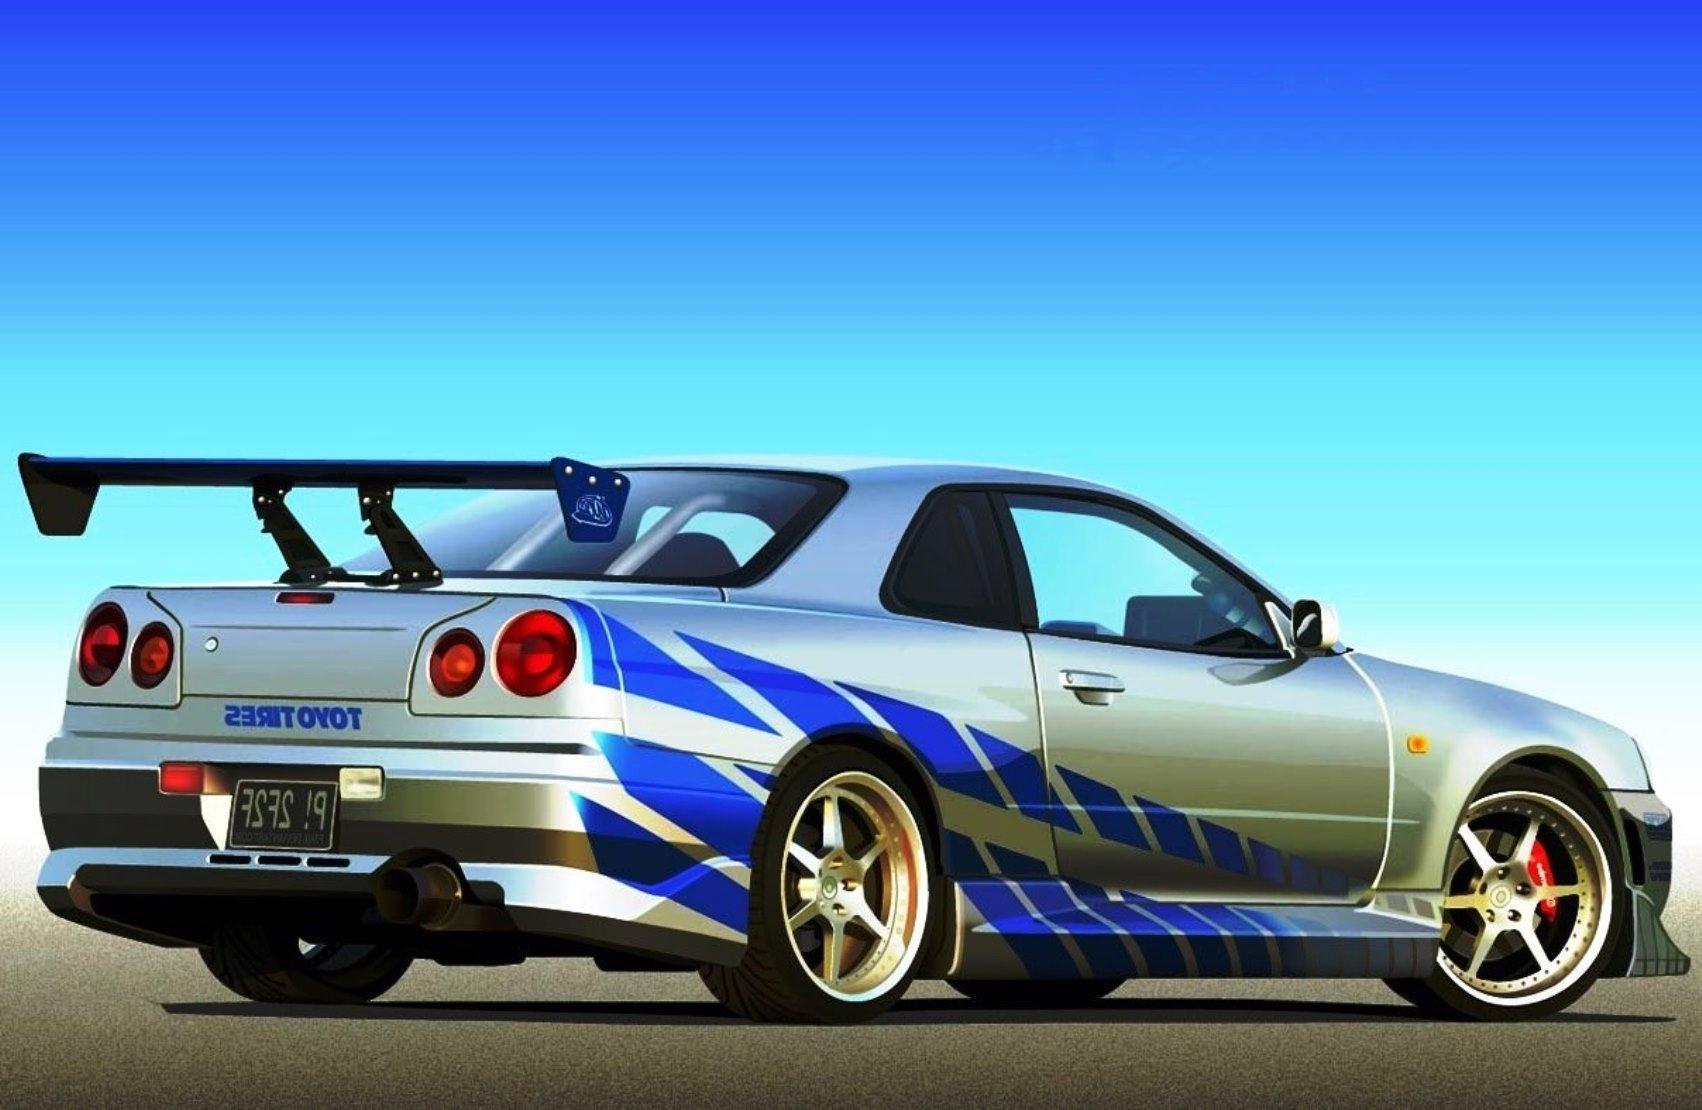 Paul Walker Nissan Skyline Wallpapers